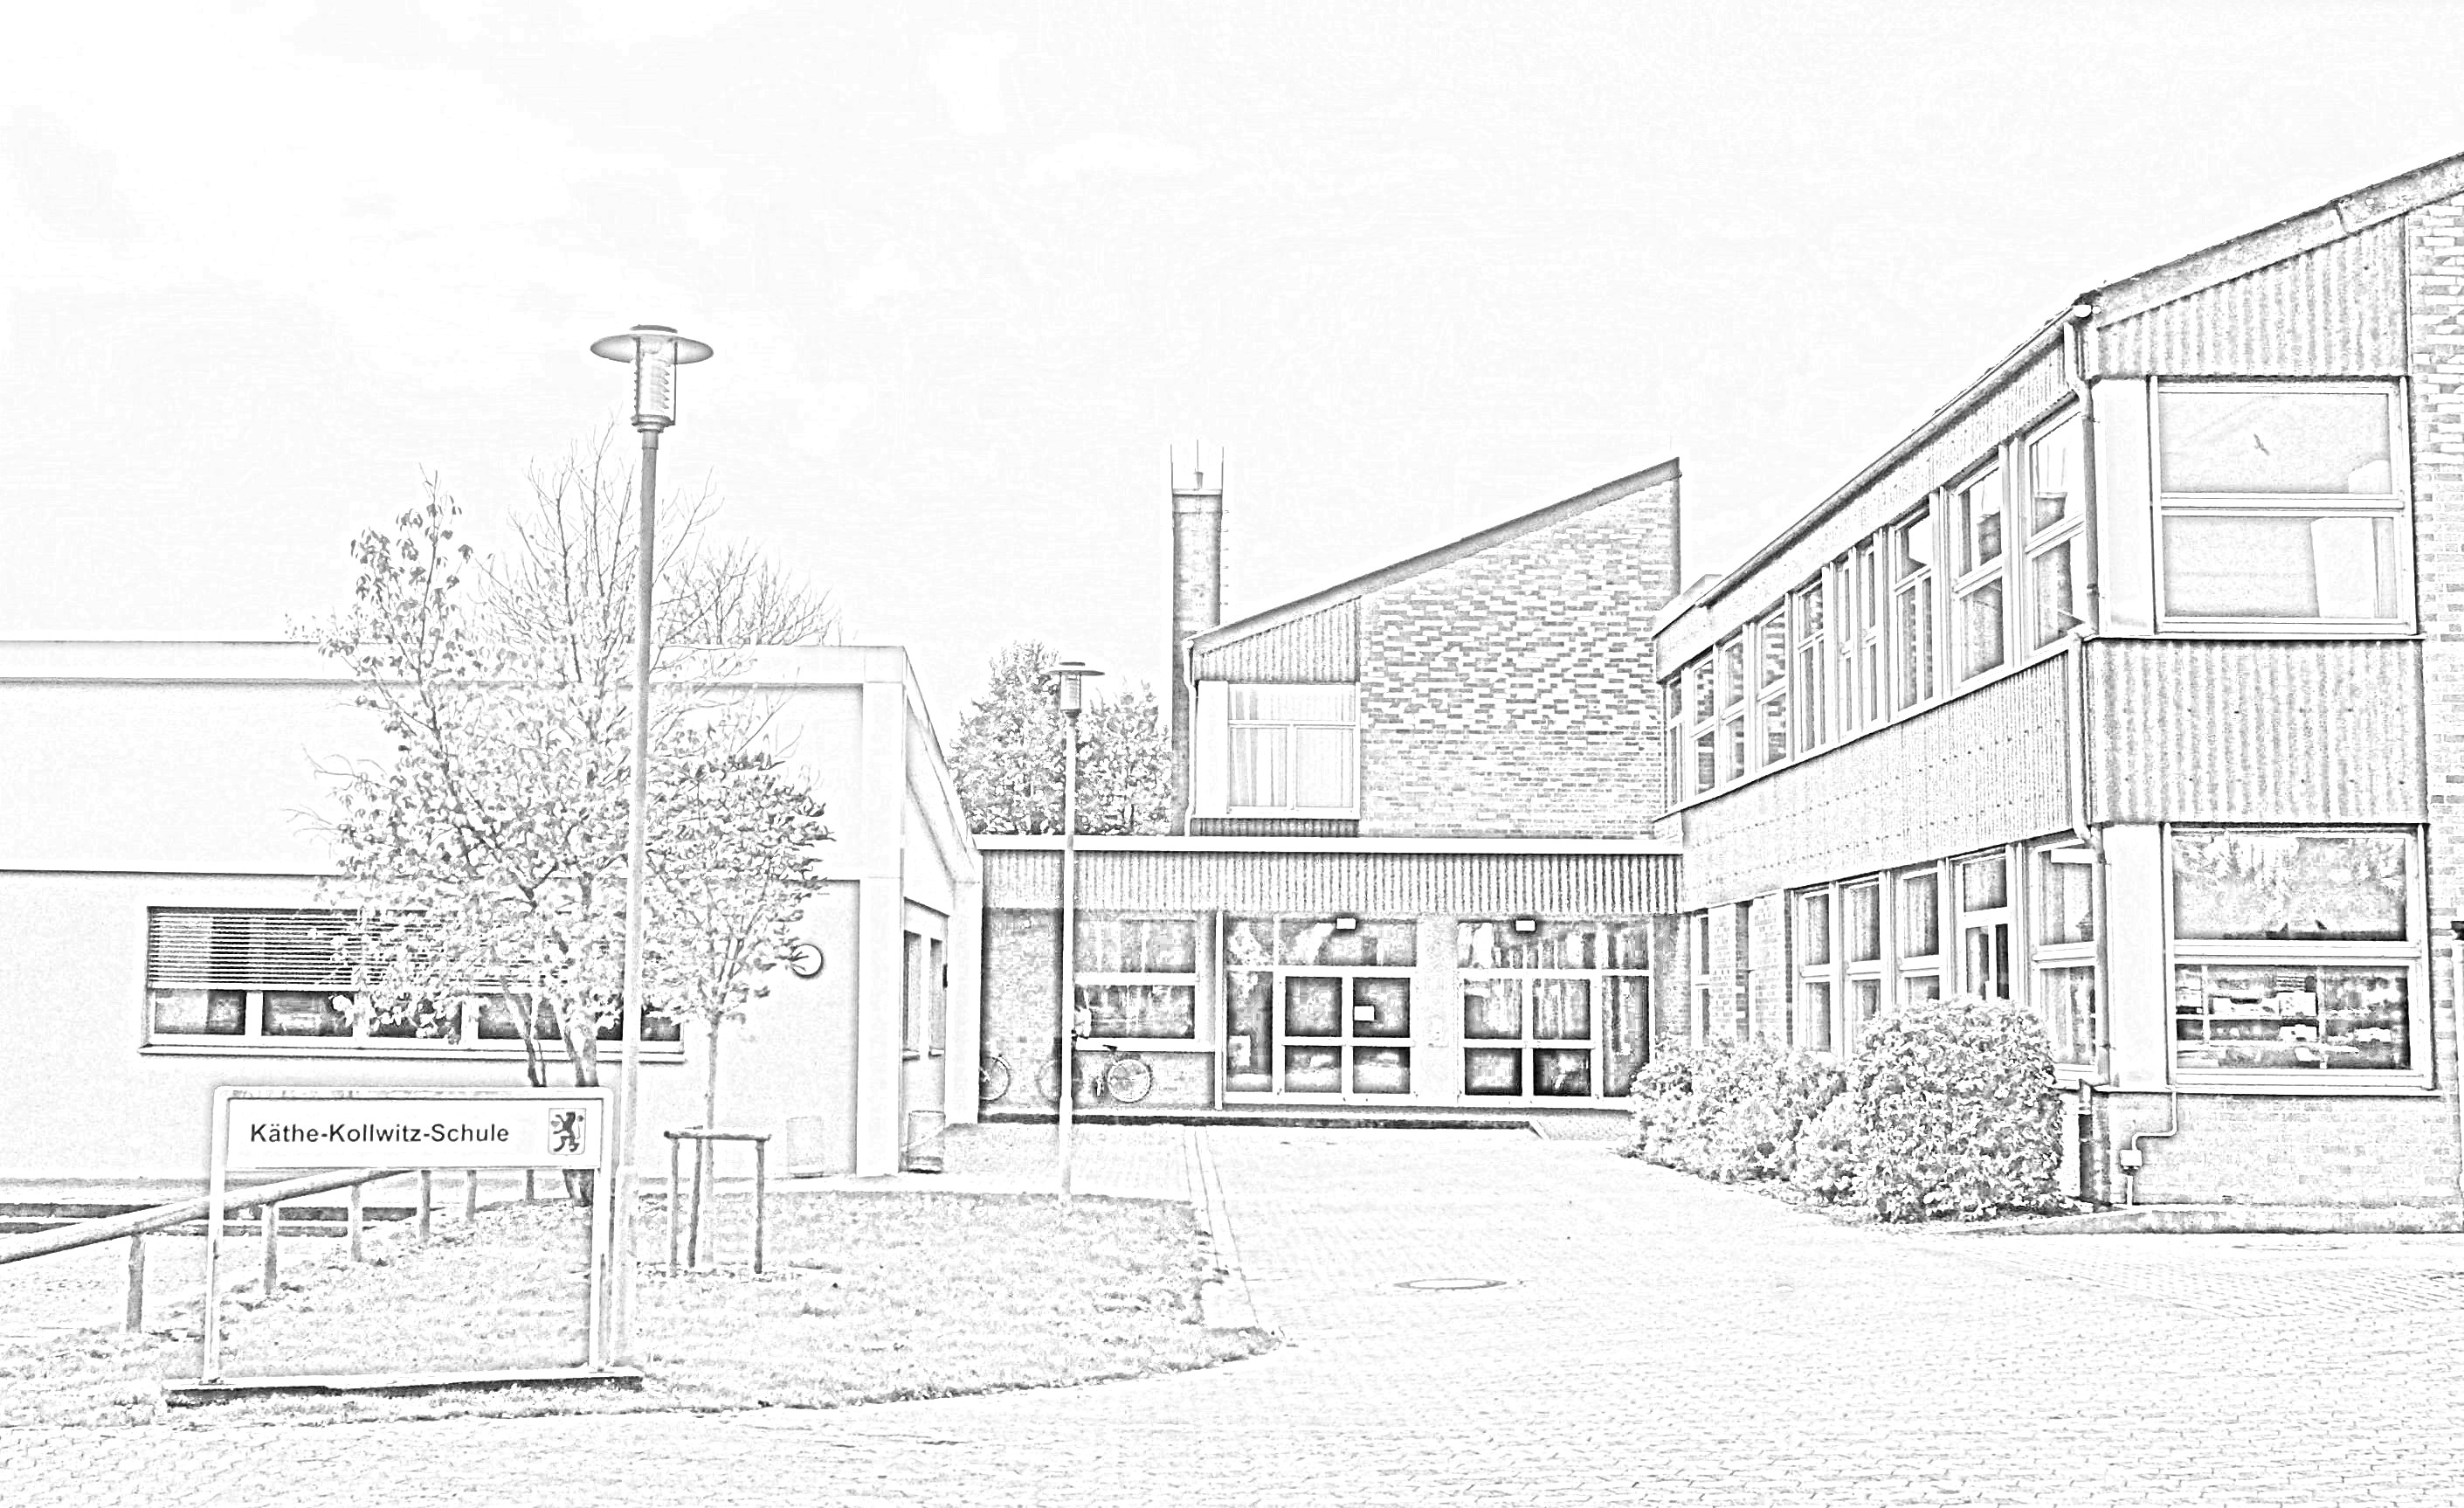 Kaethe-Kollwitz-Schule